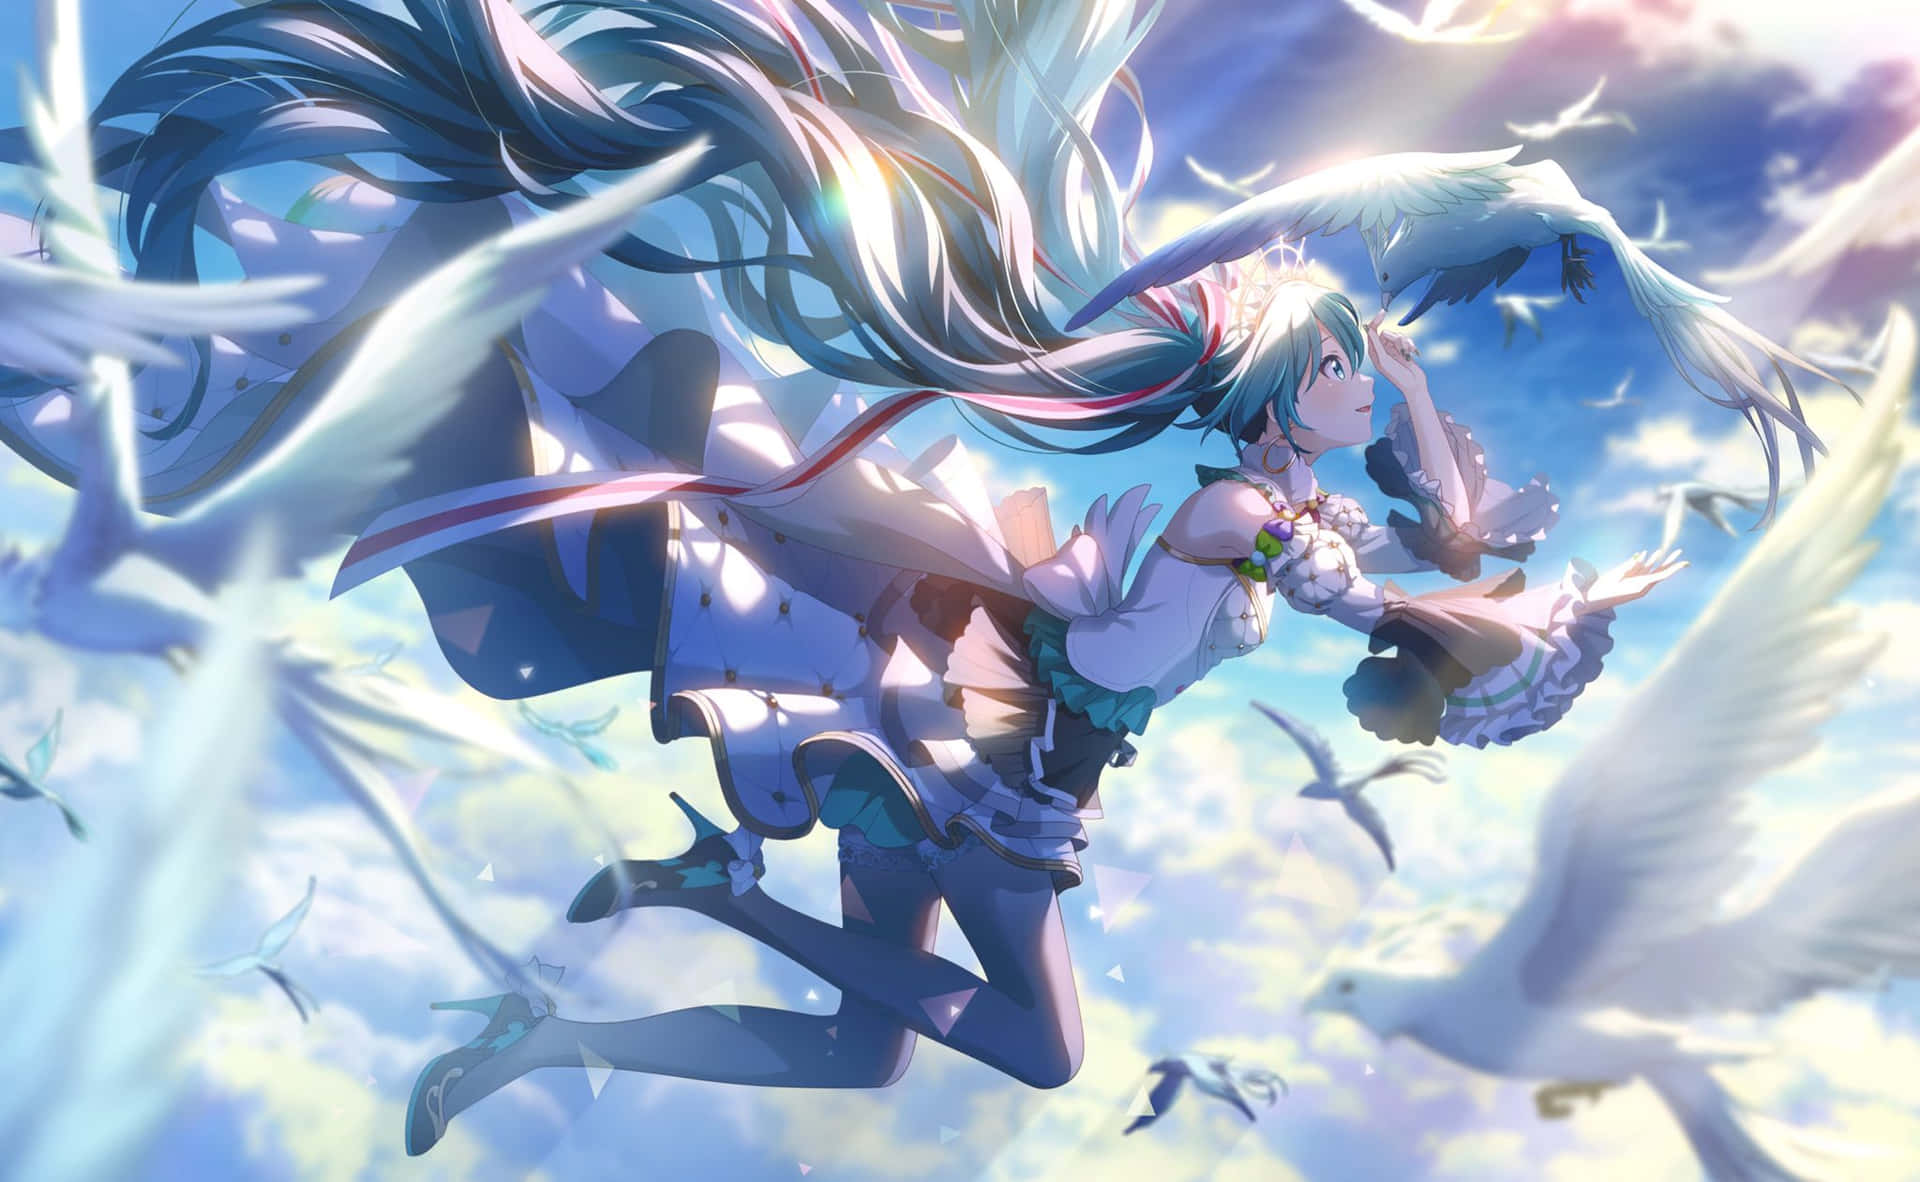 Ethereal Sky Anime Art Wallpaper